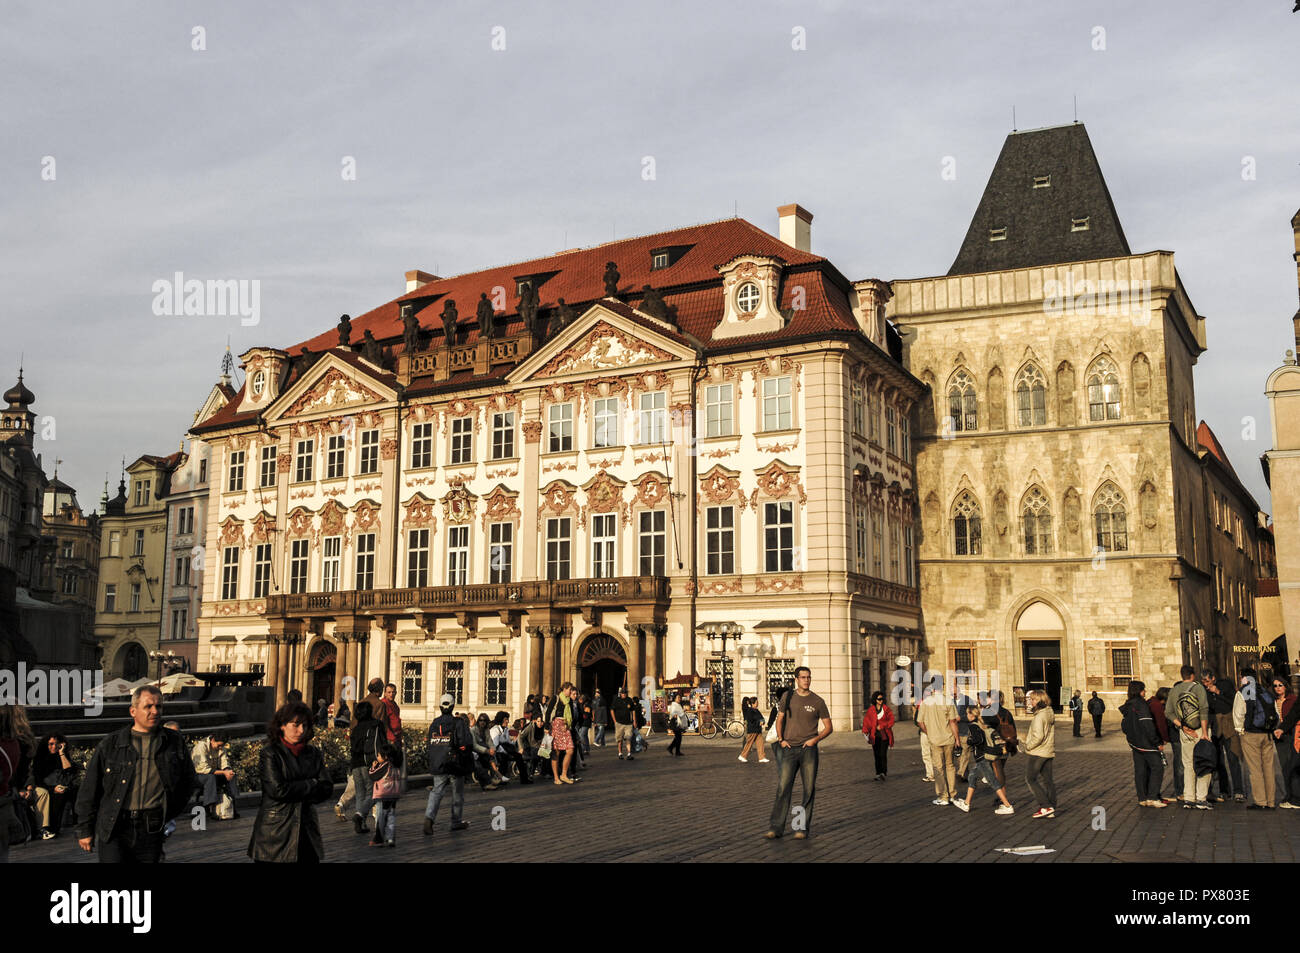 Praga, Old Town Square, Staromestske namesti, República Checa Foto de stock